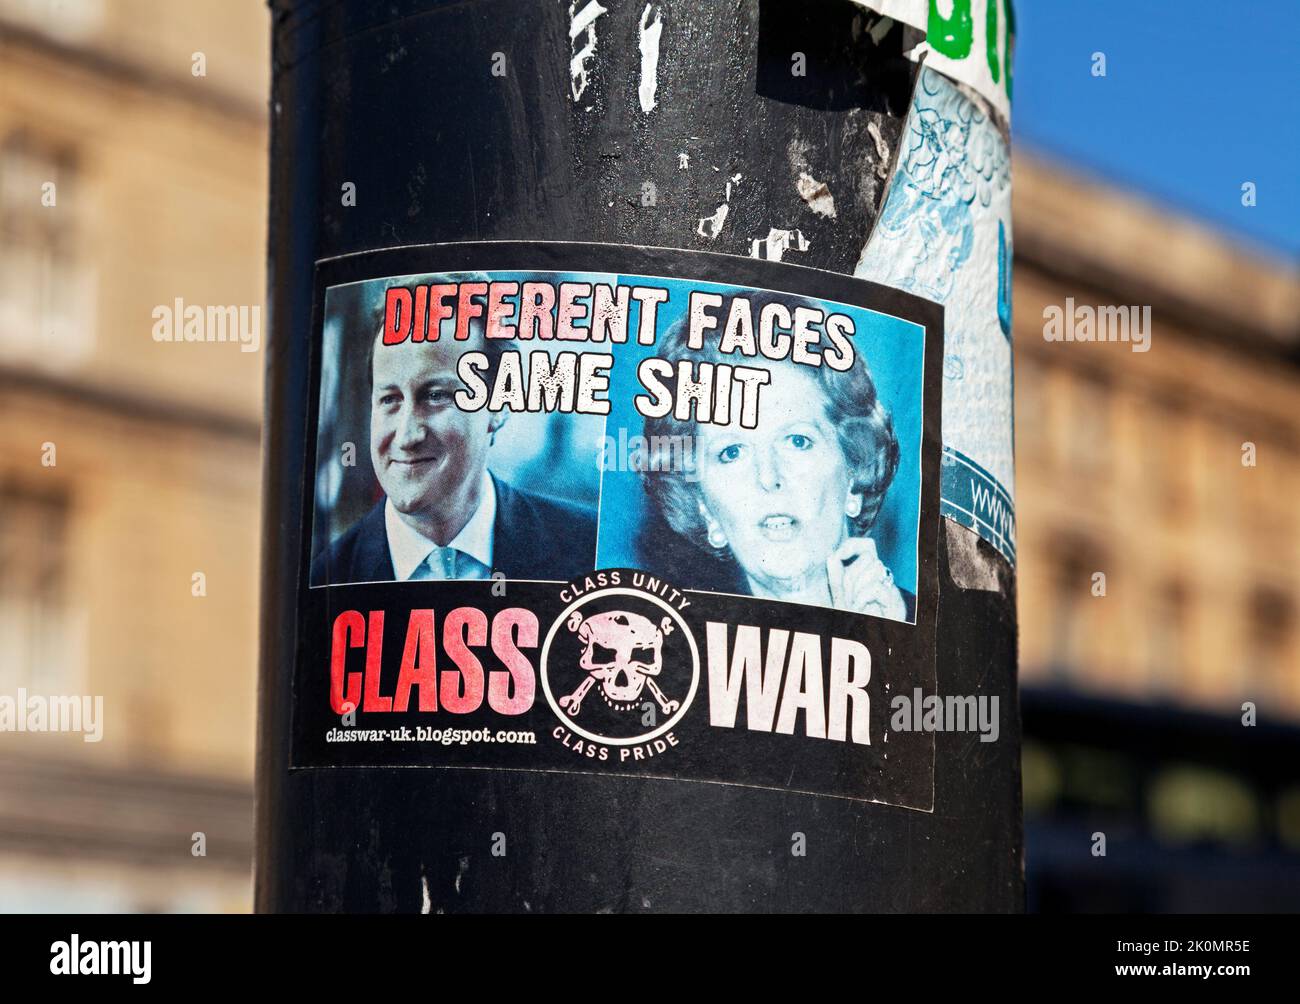 Bristol, Royaume-Uni, le 15 avril 2015. Un autocollant publié par Class War montrant des photographies de David Cameron et Margaret Thatcher et le slogan « DIFFERENT FACES SAME SHIT » Banque D'Images